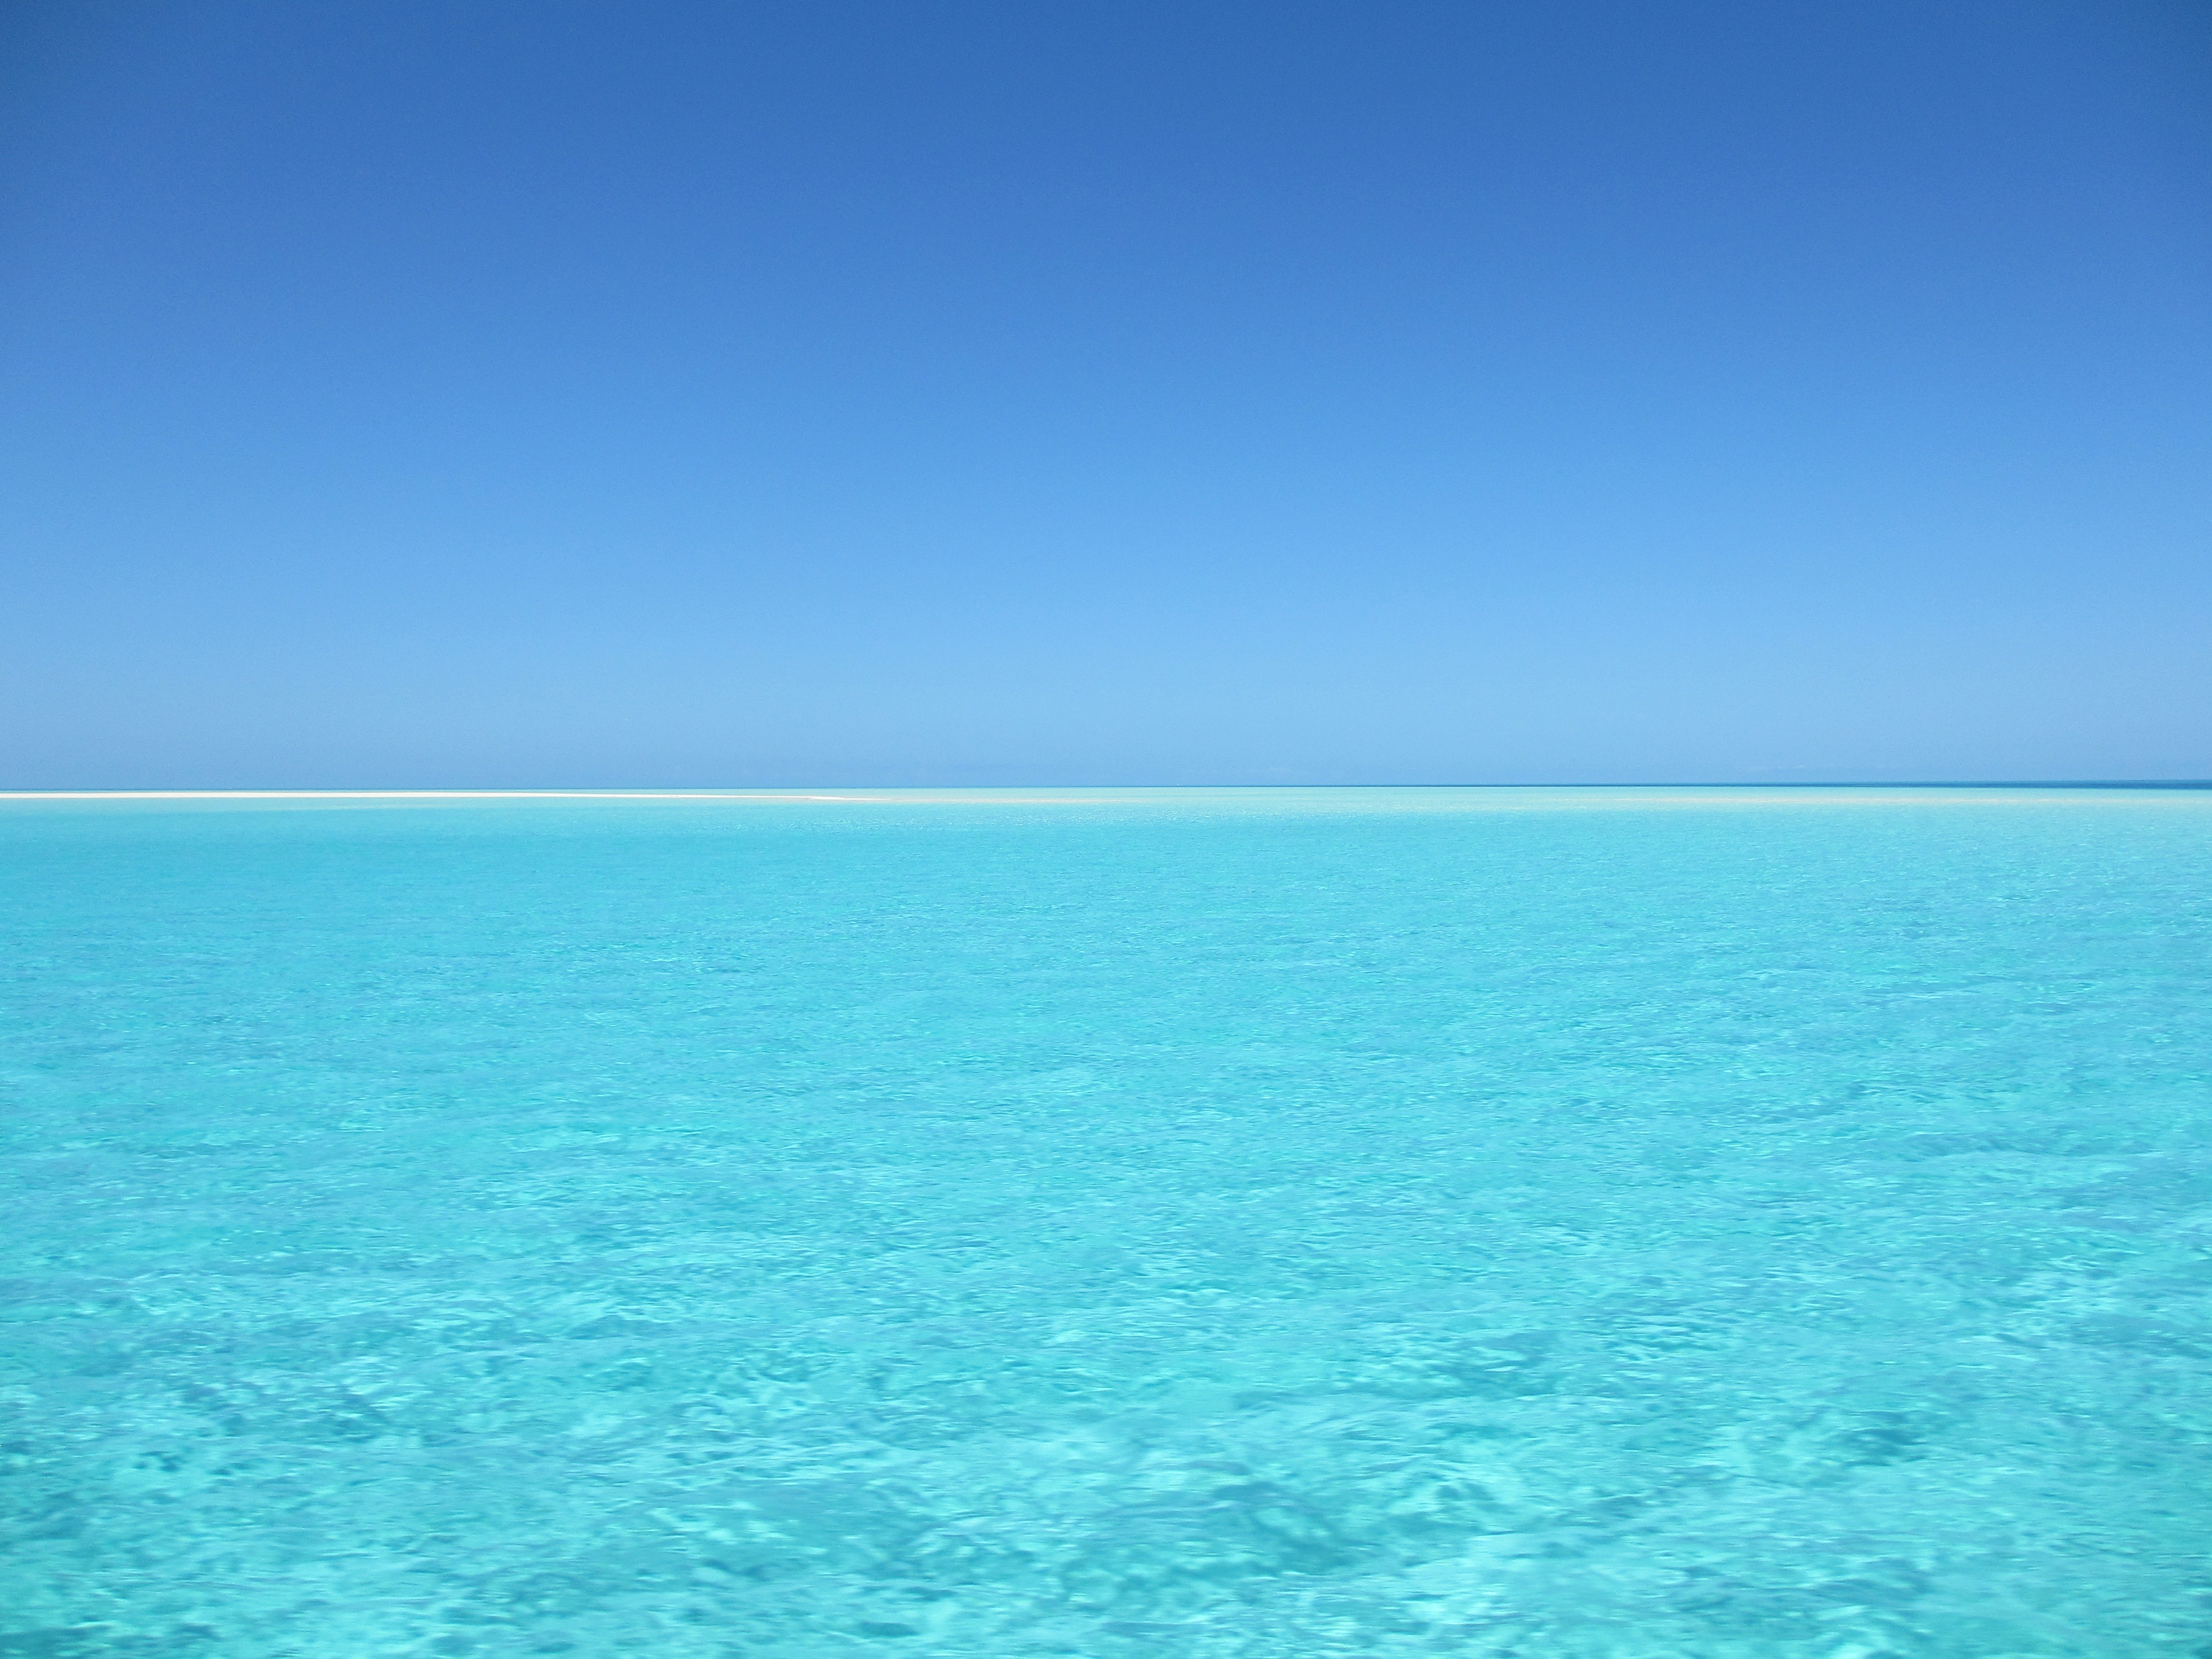 Бесплатное фото Обои с голубой водой в море